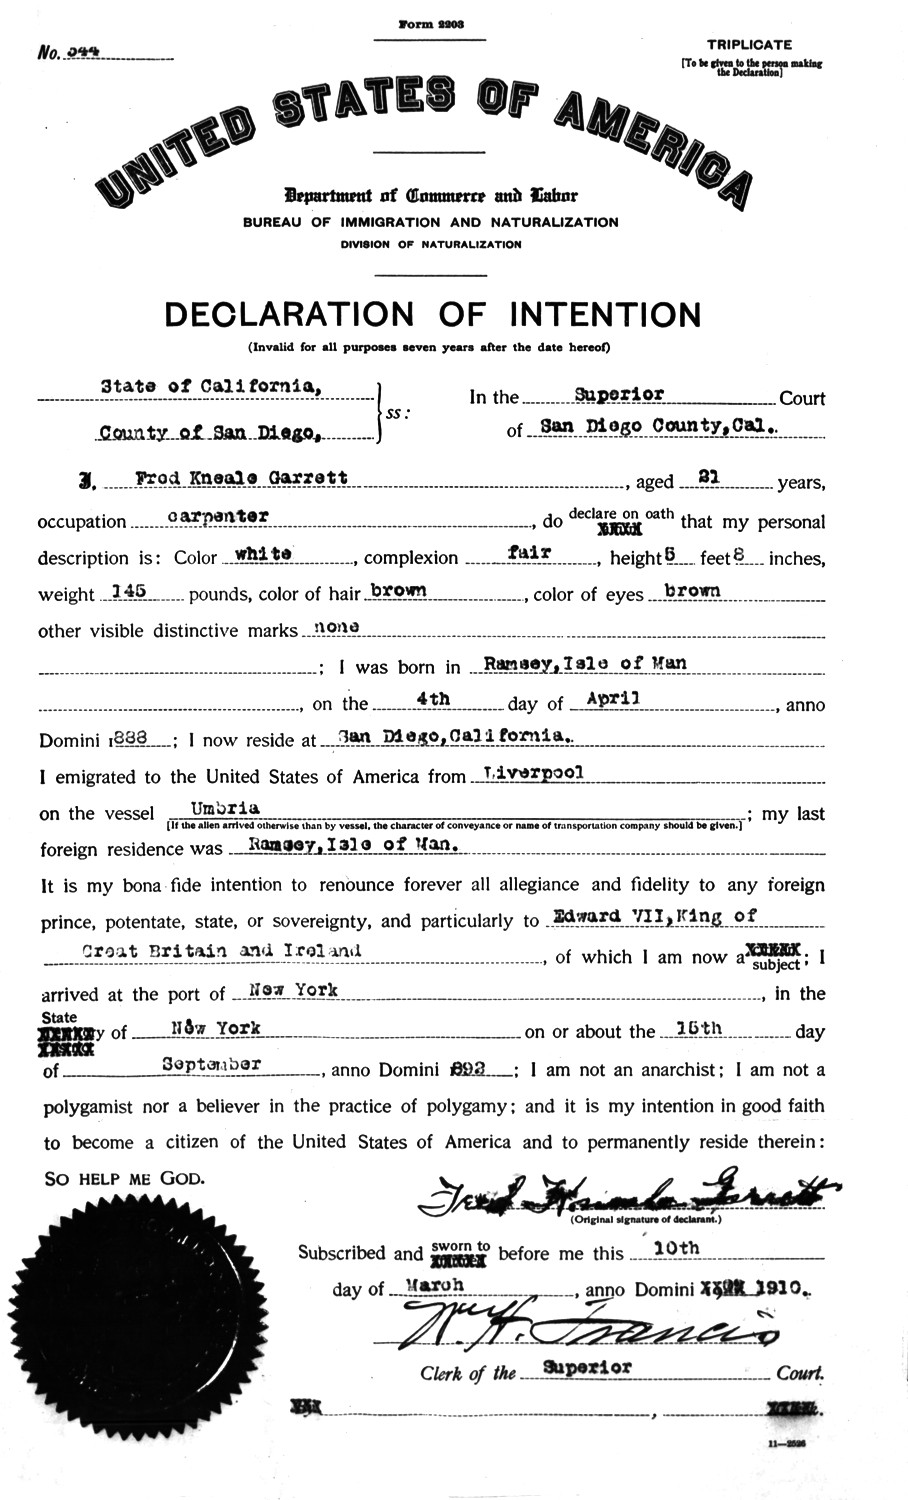  - JPG Garrett Fred Declaration of Intention 1910